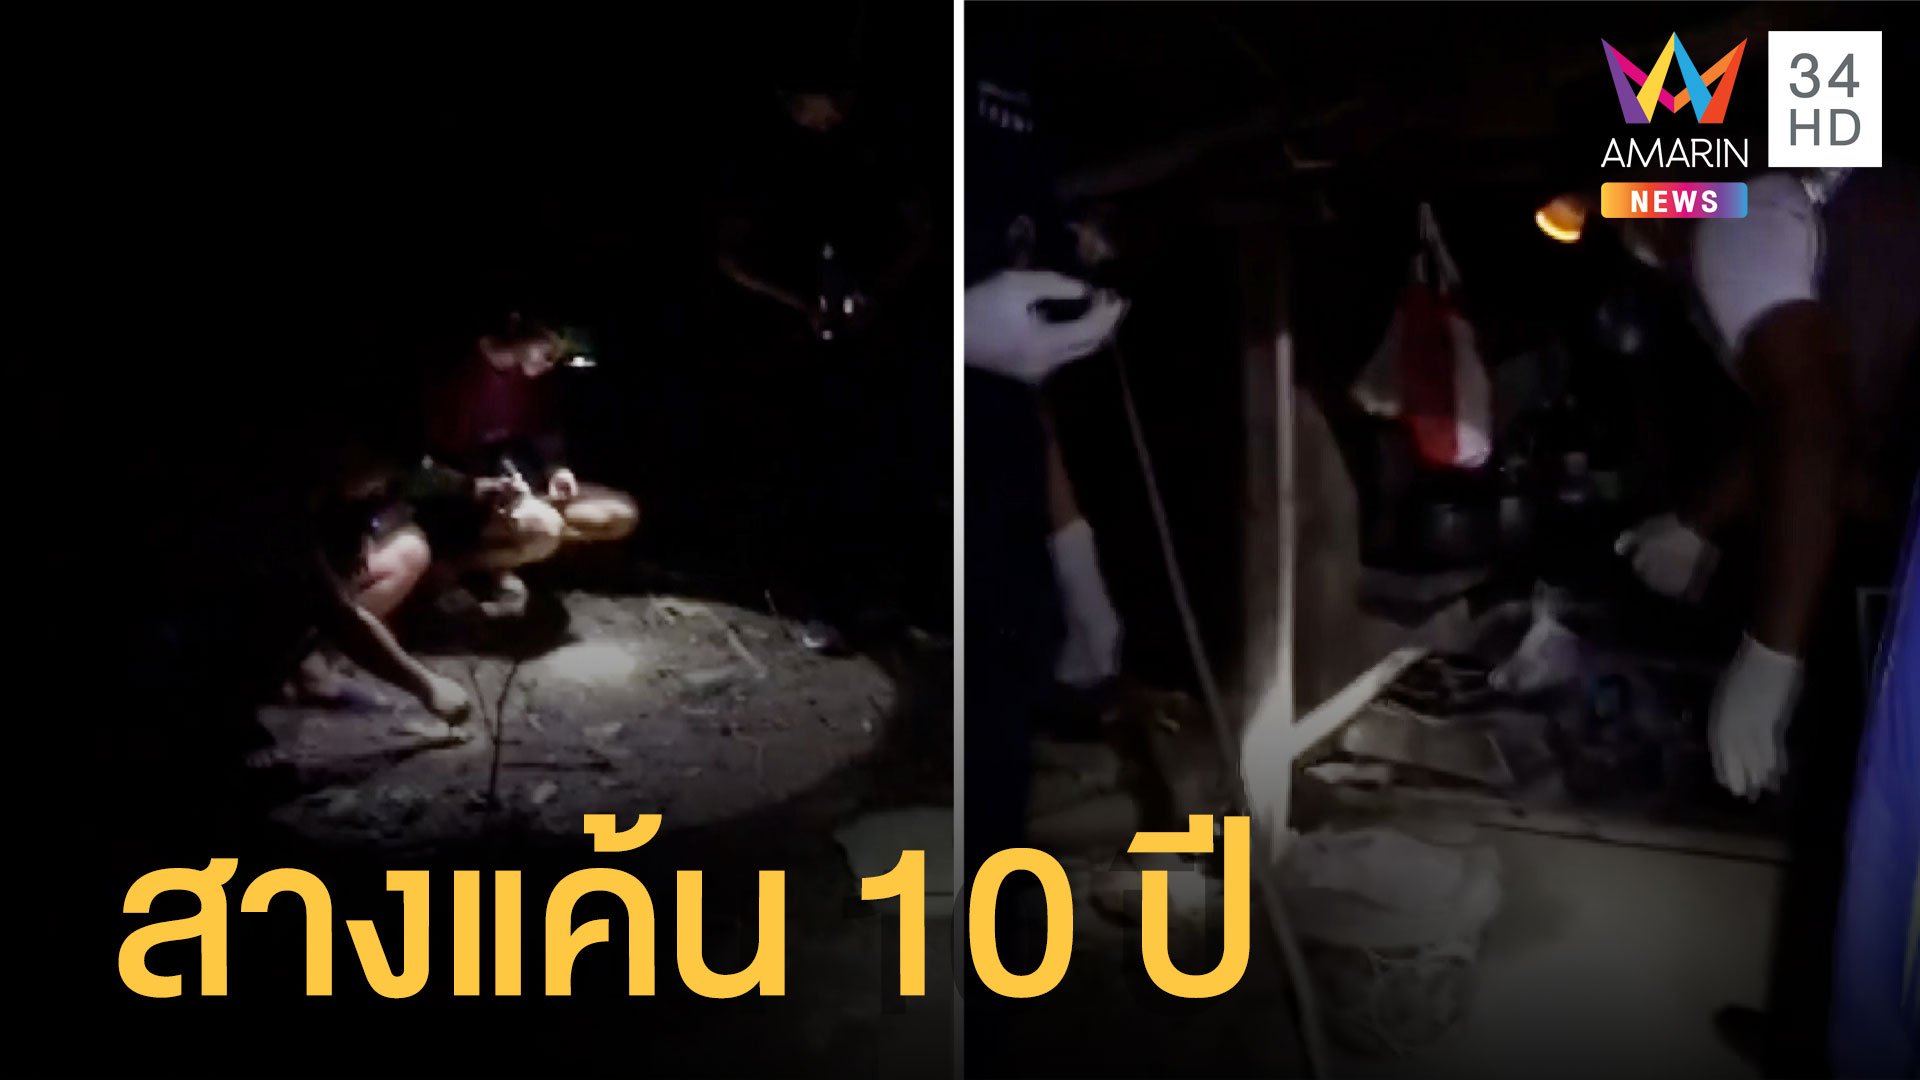 ซุ่มยิงถล่มชาวสวนยาง คาดสางปมแค้น 10 ปี | ข่าวเที่ยงอมรินทร์ | 16 ก.ค. 65 | AMARIN TVHD34